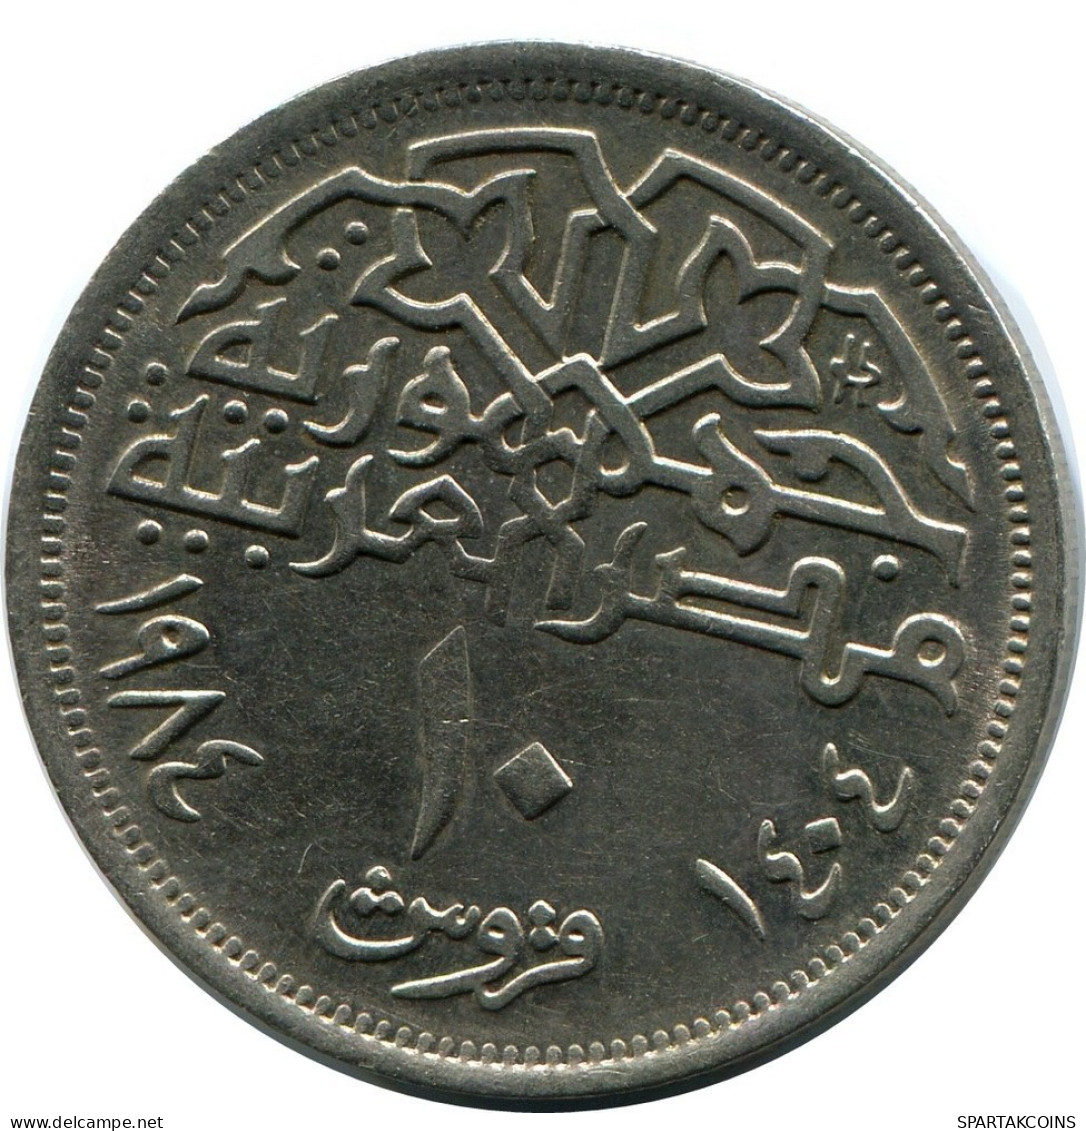 10 QIRSH 1984 ÄGYPTEN EGYPT Islamisch Münze #AR863.D.A - Egypt